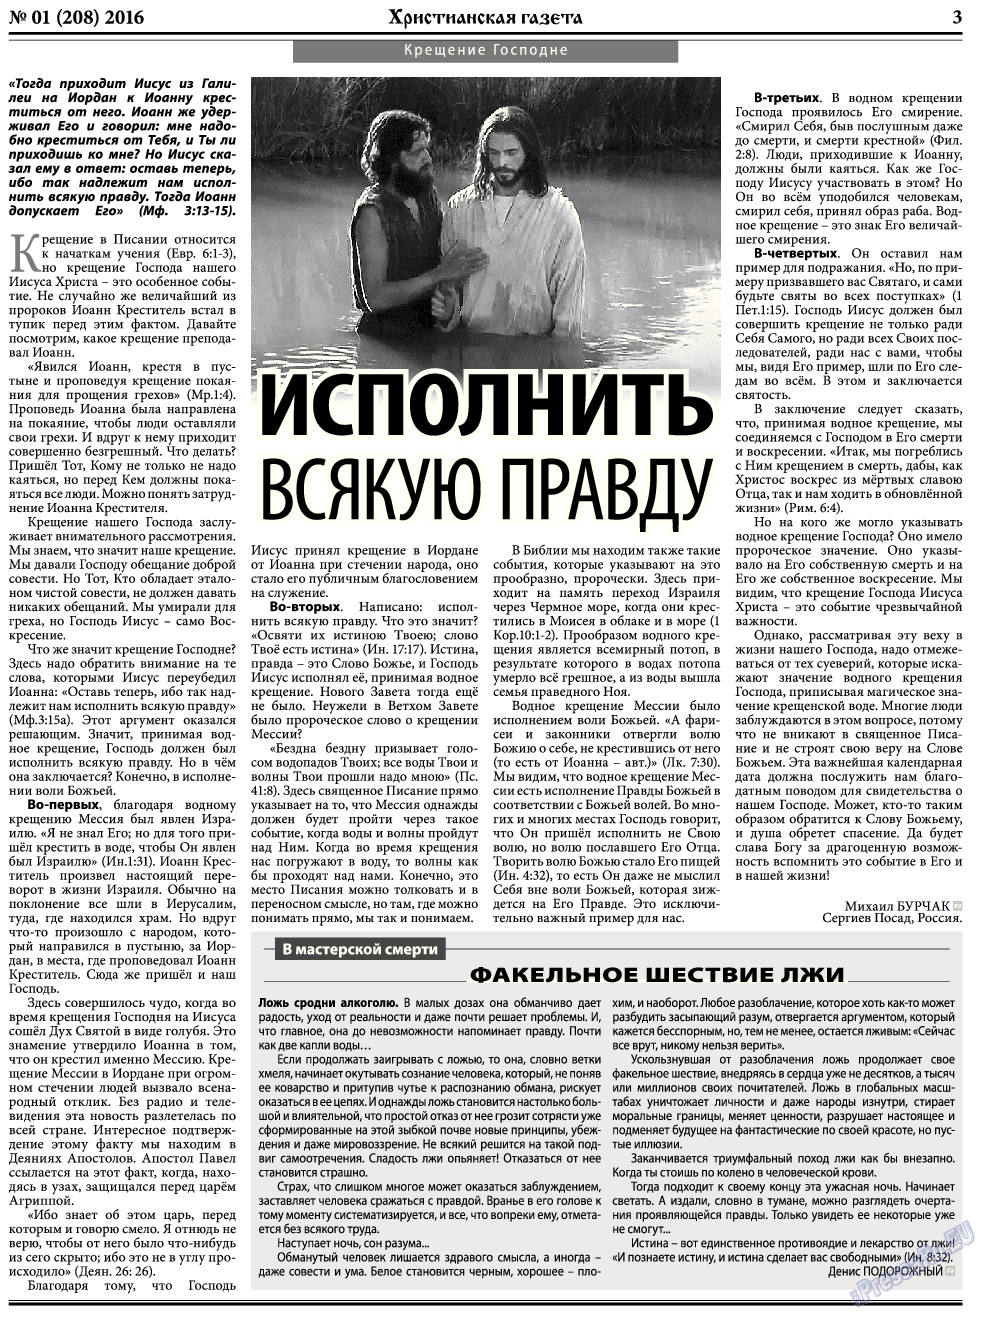 Христианская газета, газета. 2016 №1 стр.3